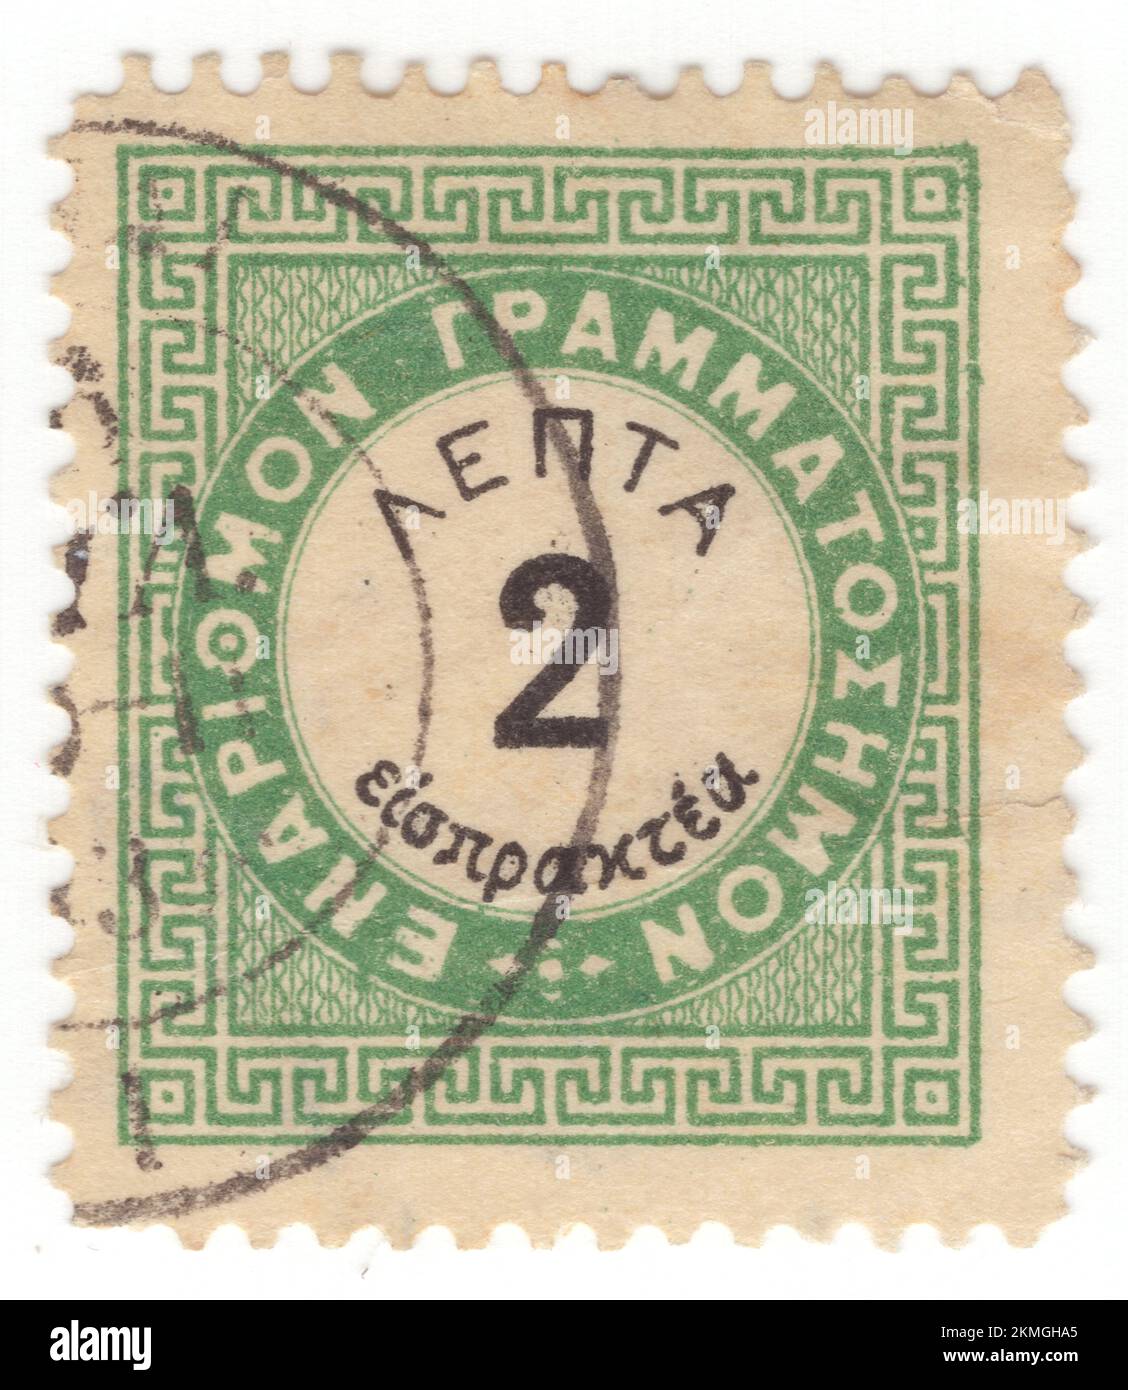 GRIECHENLAND - 1876: Ein gelb-grüner und schwarzer Briefstempel mit 2 Leptas, der das Numerale in einem kreisförmigen Rahmen mit klassischem griechischen geometrischen Ornamenten darstellt Stockfoto